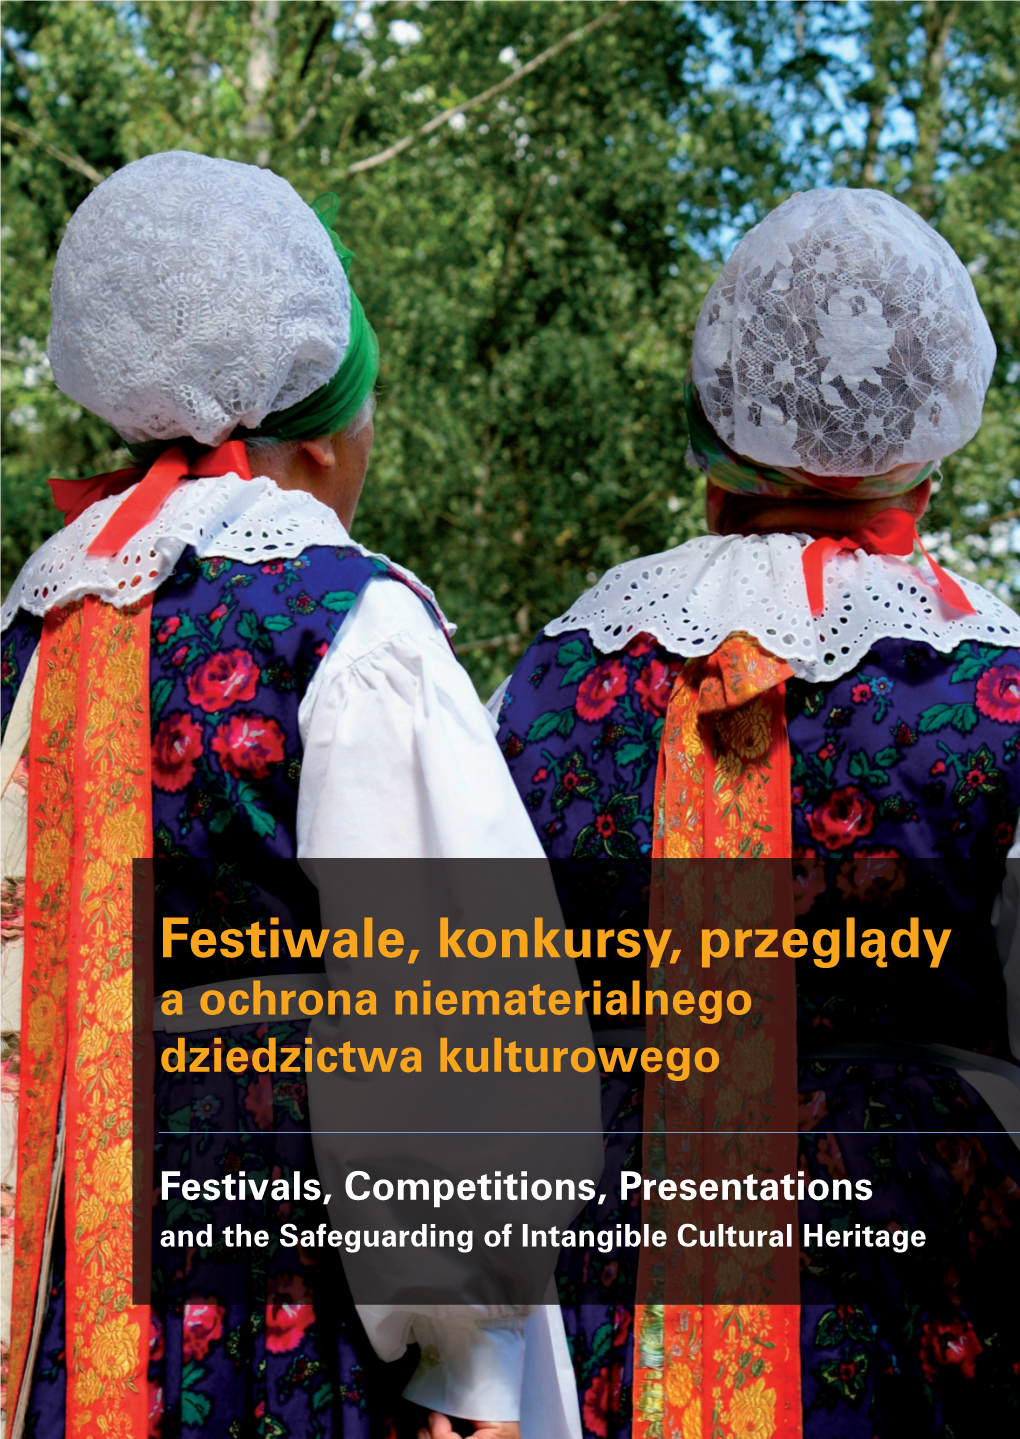 Festiwale, Konkursy, Przeglądy Konkursy, Festiwale, a Ochrona Niematerialnego Dziedzictwa Kulturowego